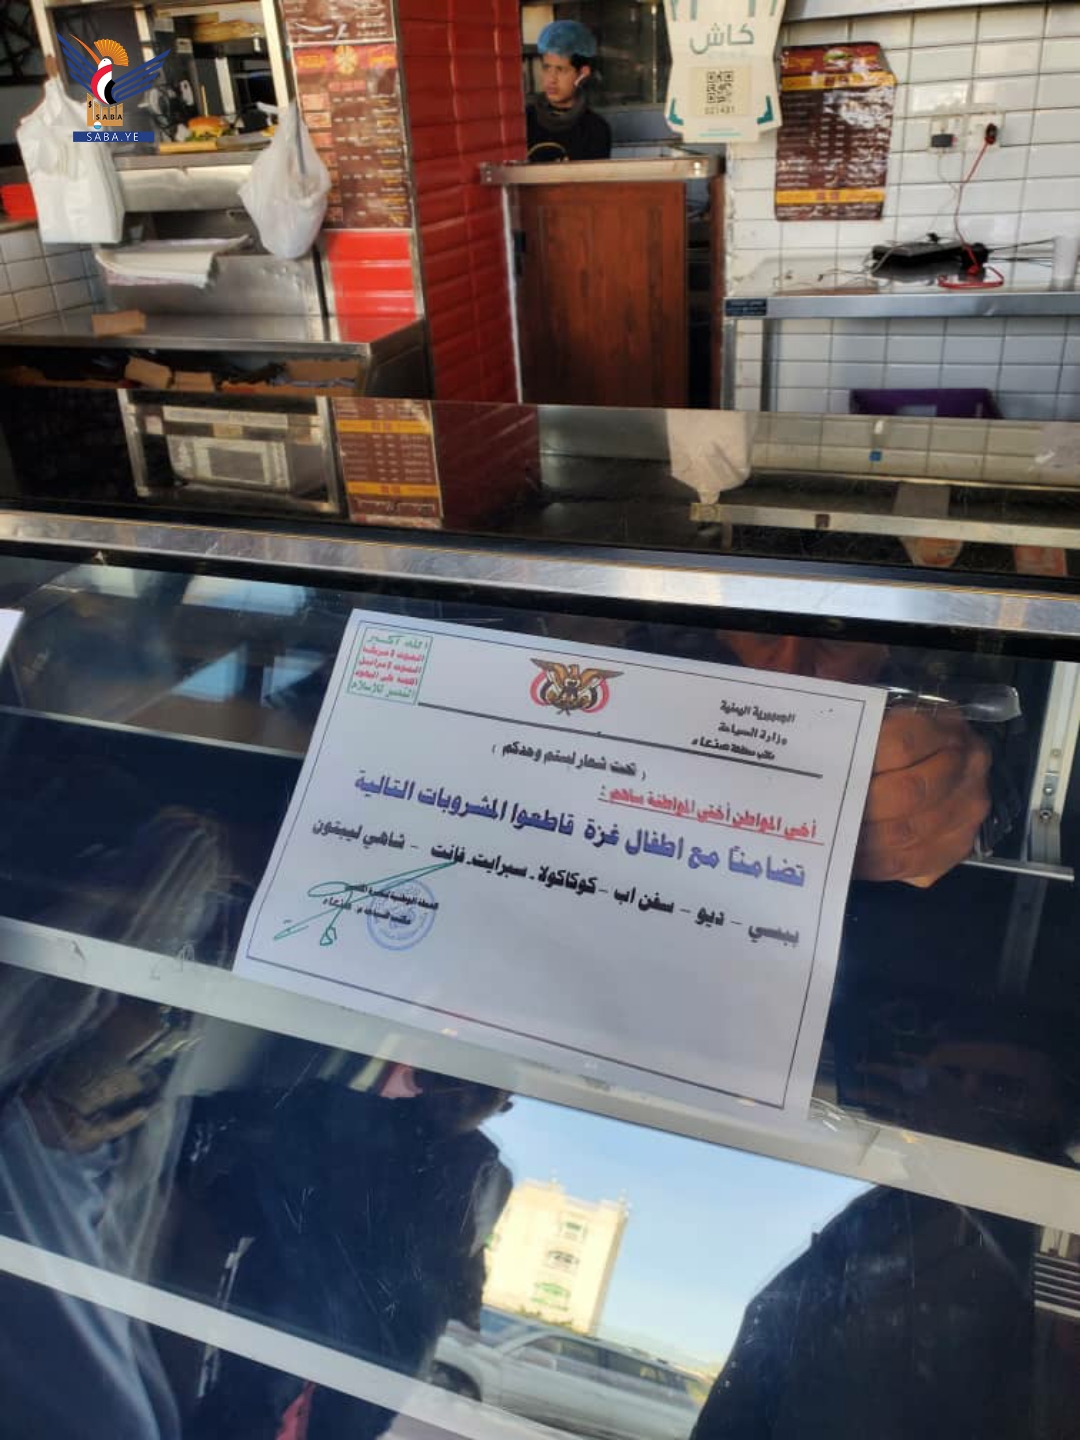 صنعاء ..تدشين حملة توعية بمقاطعة البضائع الأمريكية والإسرائيلية في المنشآت السياحية